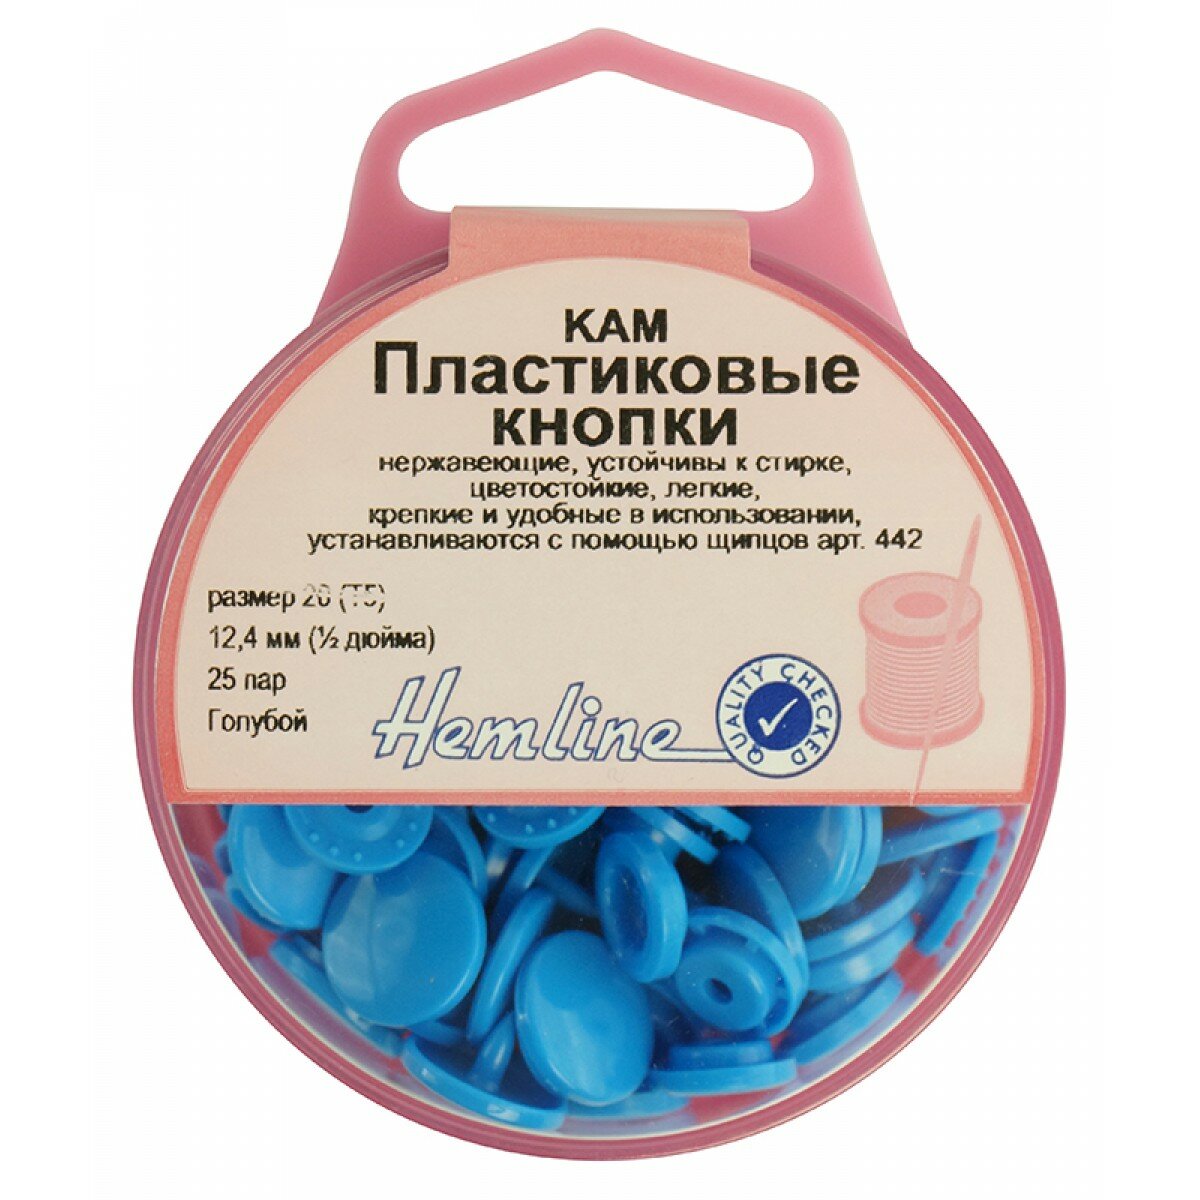 Кнопки пластиковые, 12,4 мм, цвет голубой 20 (T5) голубой 12,4 мм HEMLINE 443. BLUE